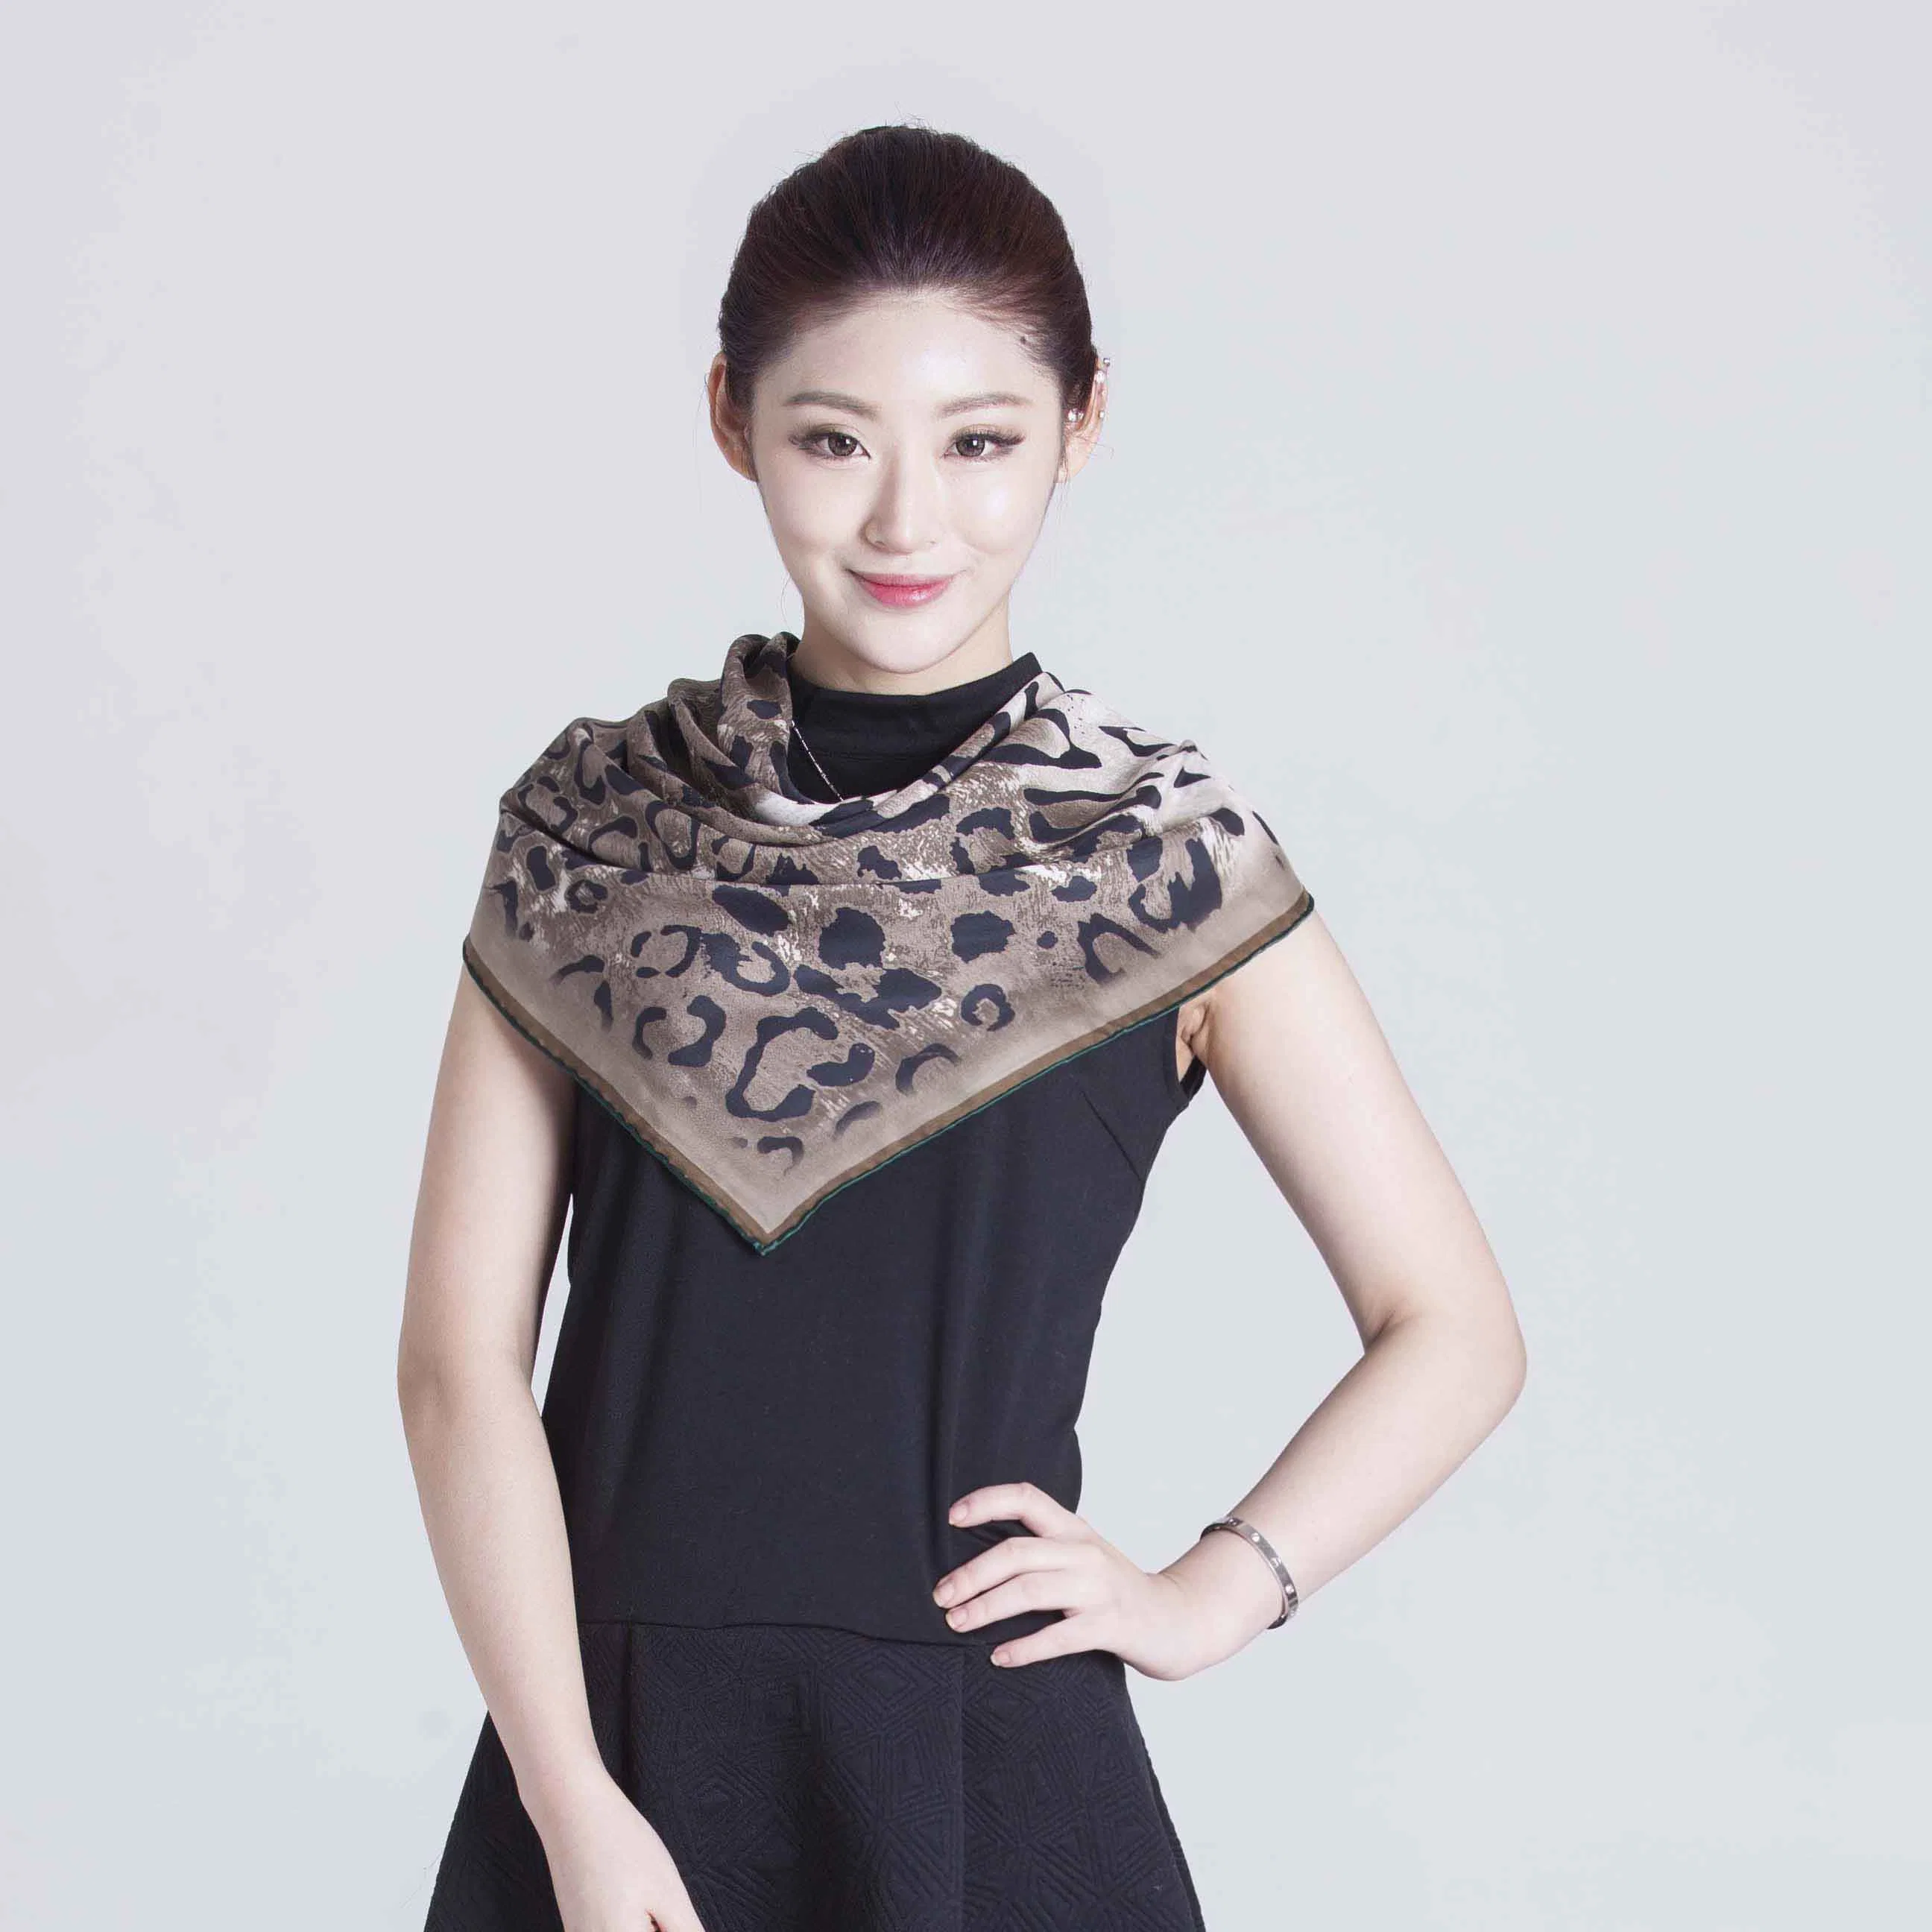 2017 Shanghai напрямую Продажа одежды Shшелкового шарфа Shawl Аксессуары для Лето и зима